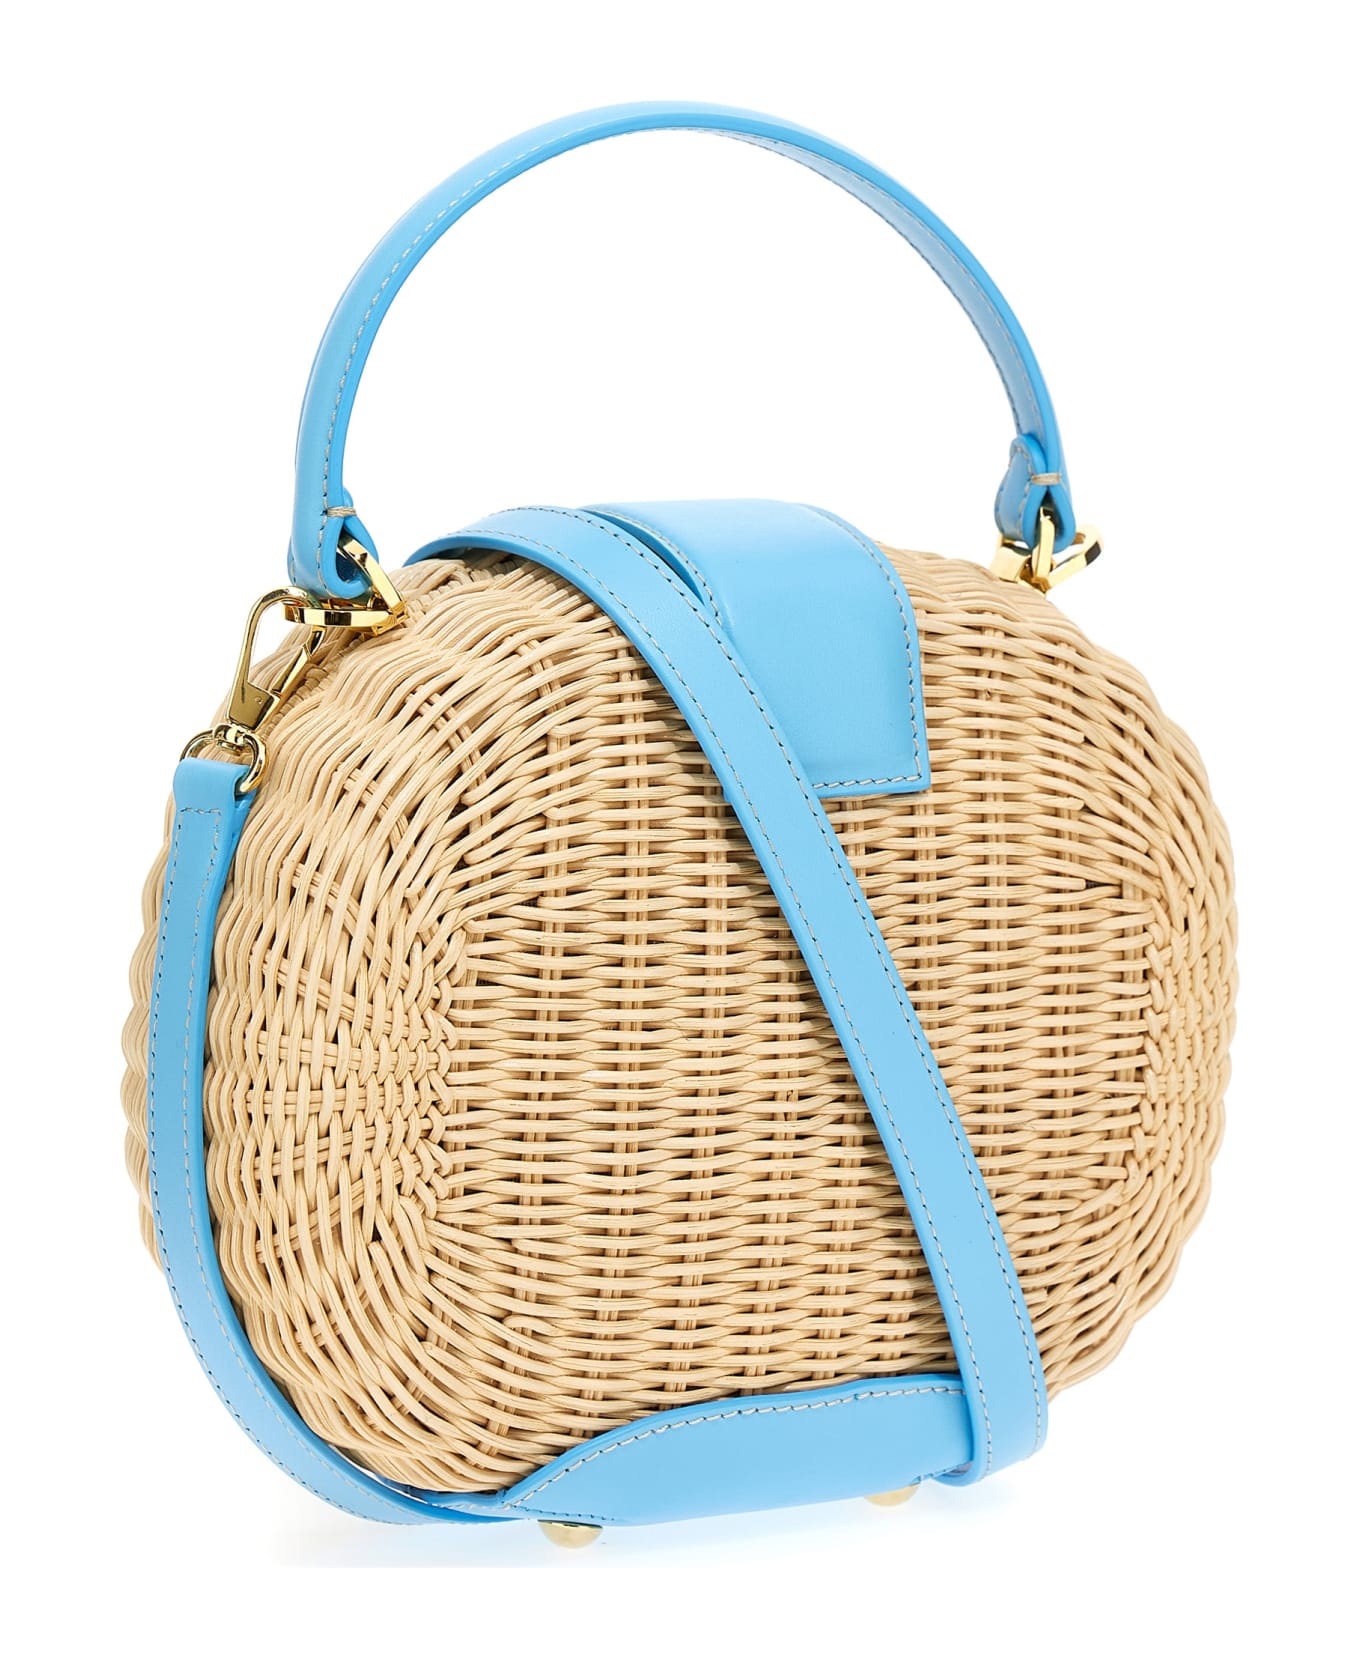 Rodo Pore-shaped Handbag - Light Blue